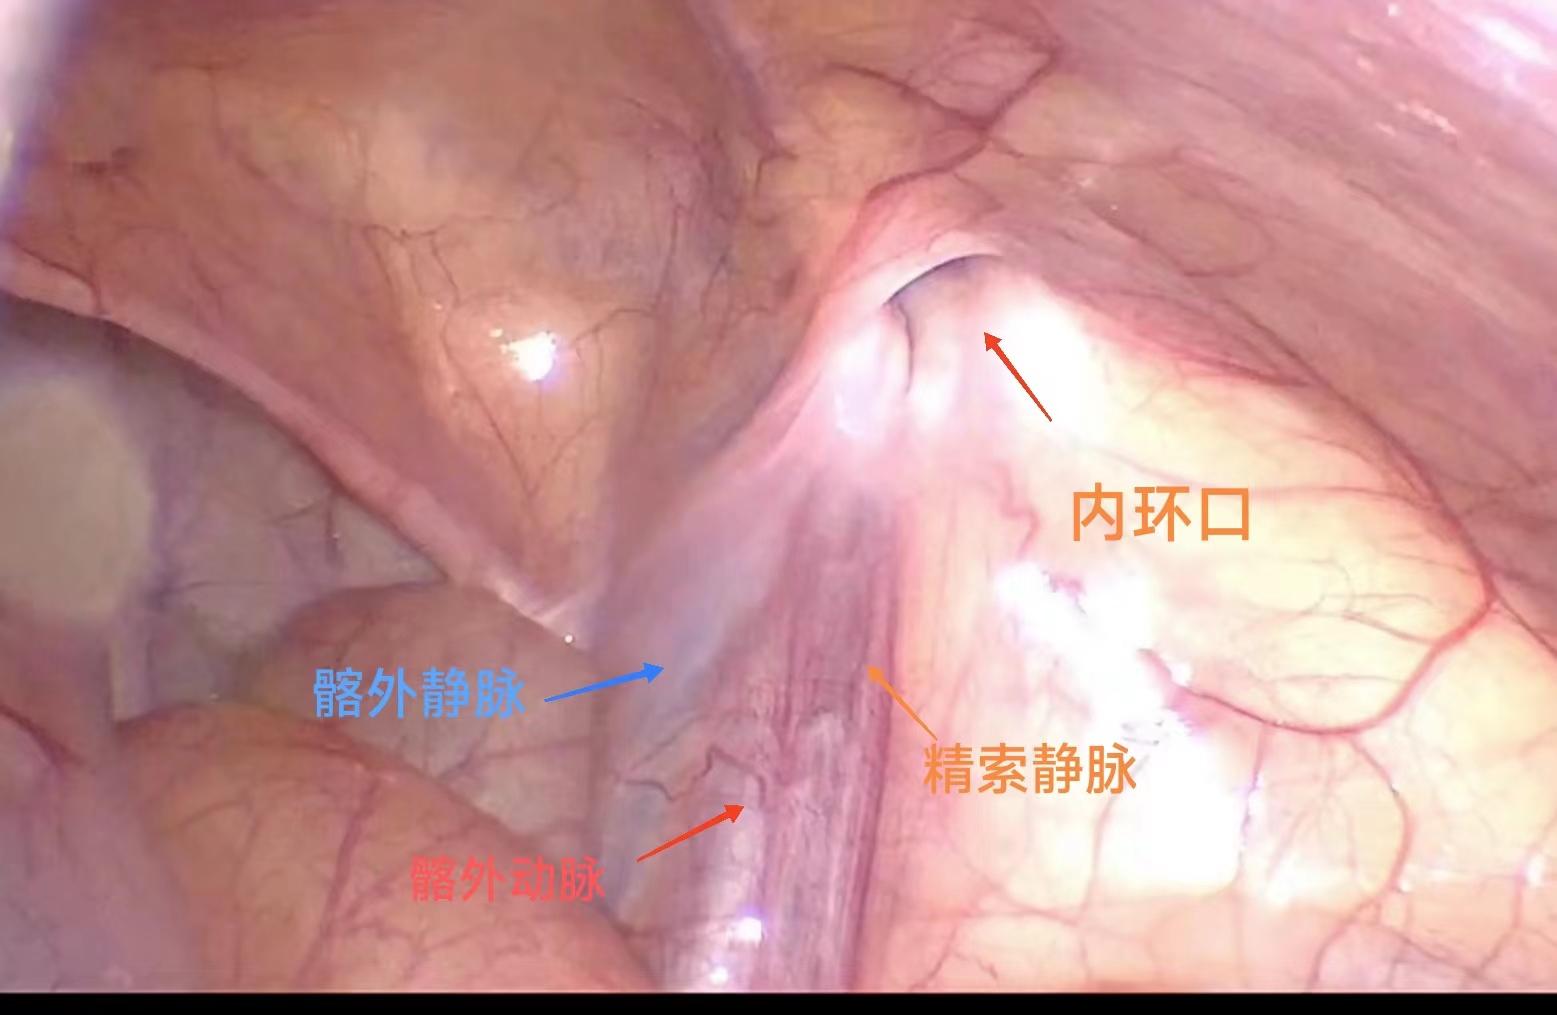 腹腔鏡下鞘膜突高位結扎術：一項高效、安全的微創治療方法